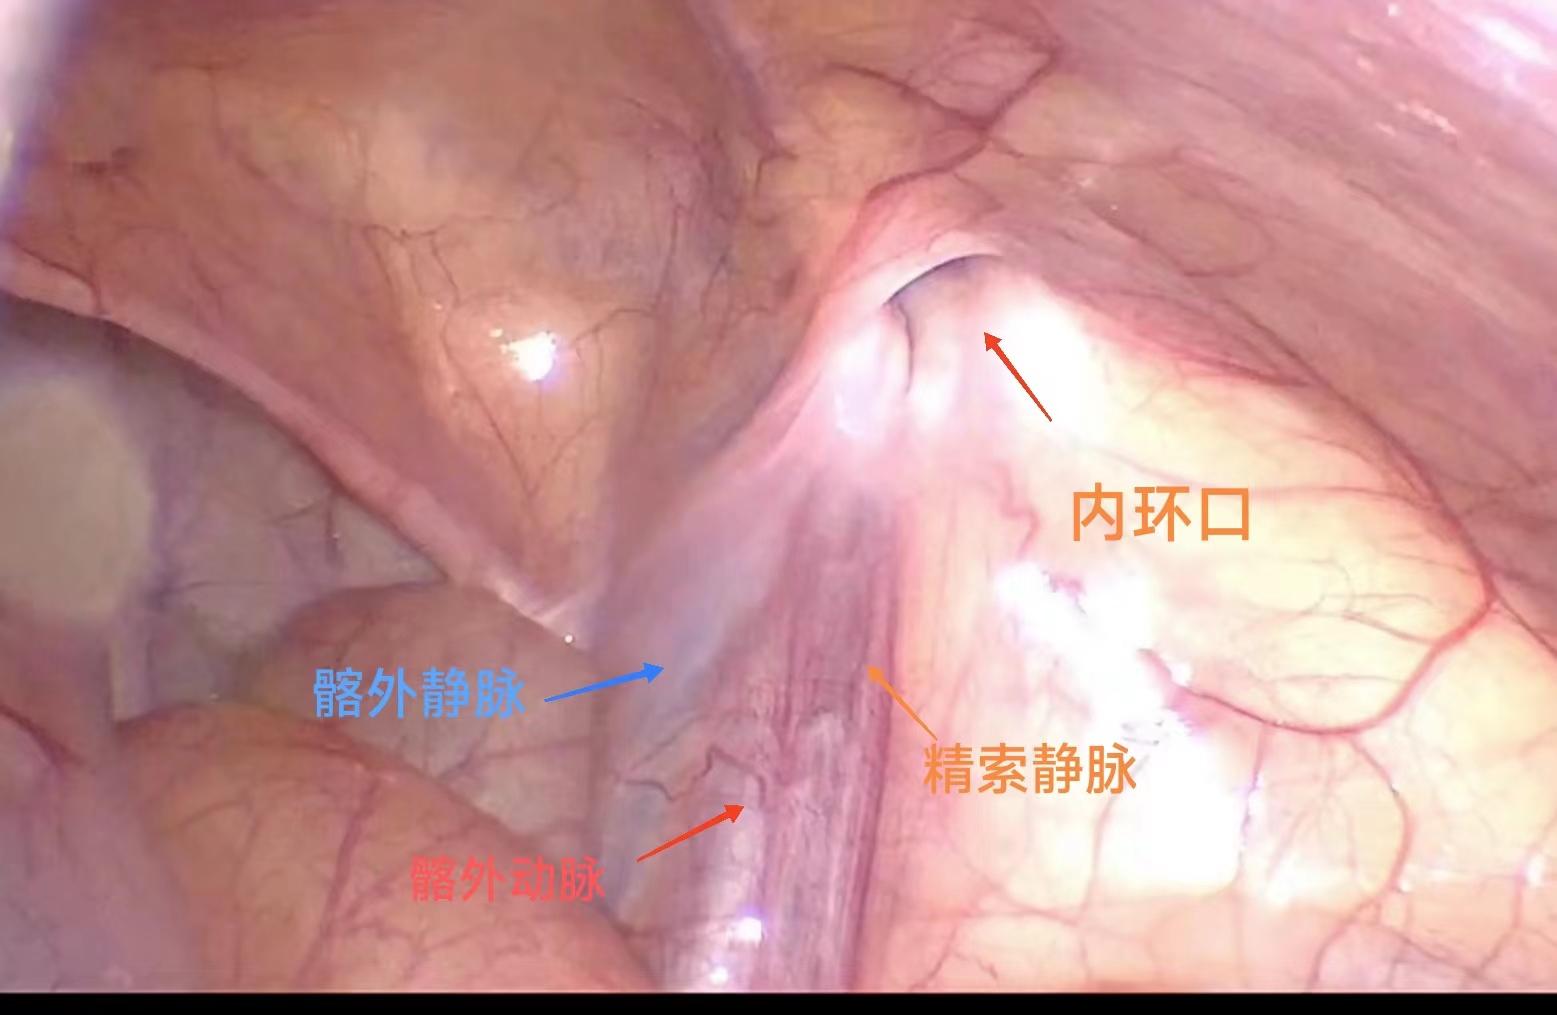 腹腔鏡下鞘膜突高位結扎術：一項高效、安全的微創治療方法